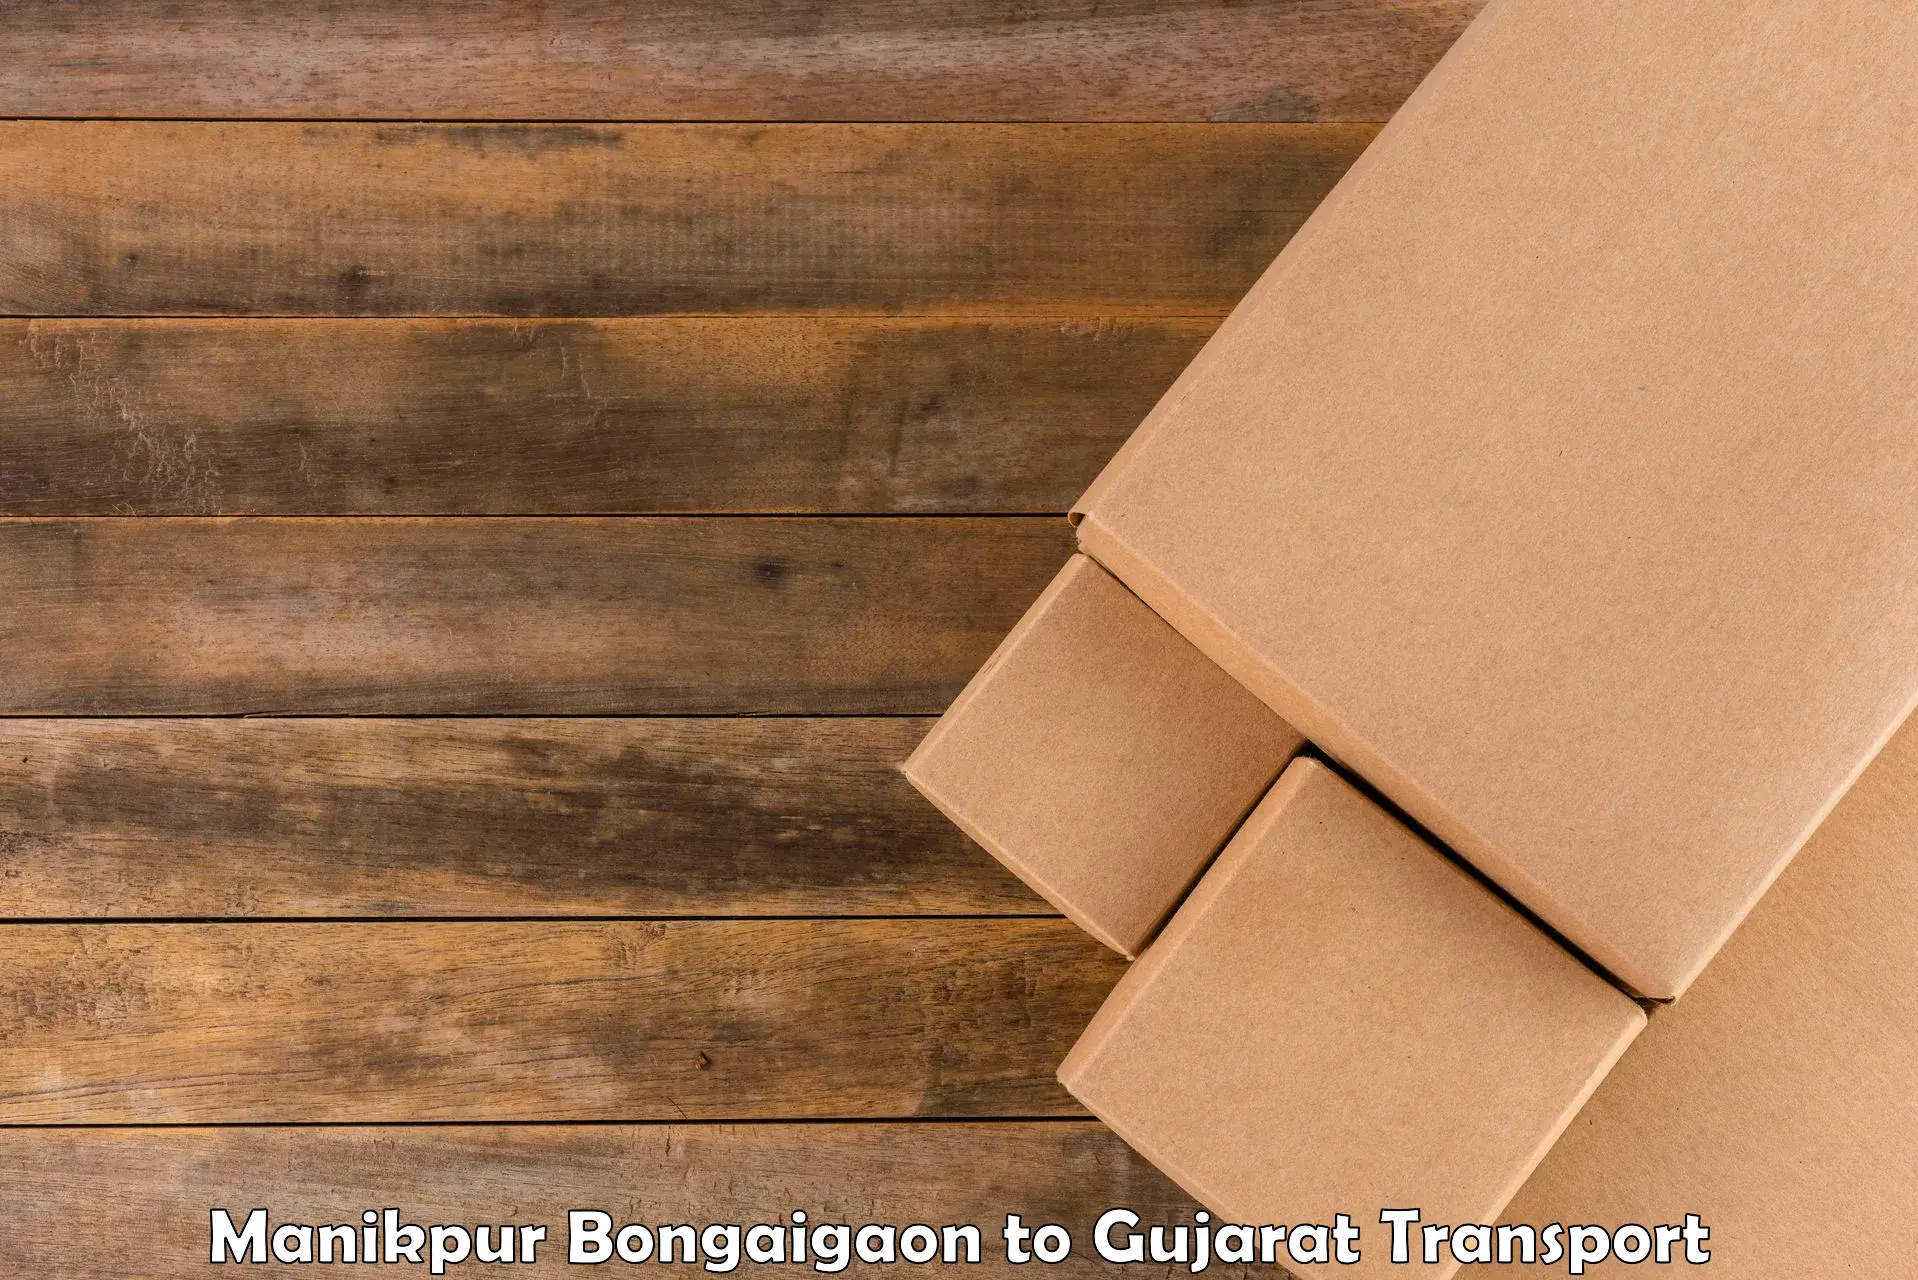 Interstate transport services Manikpur Bongaigaon to Vagara